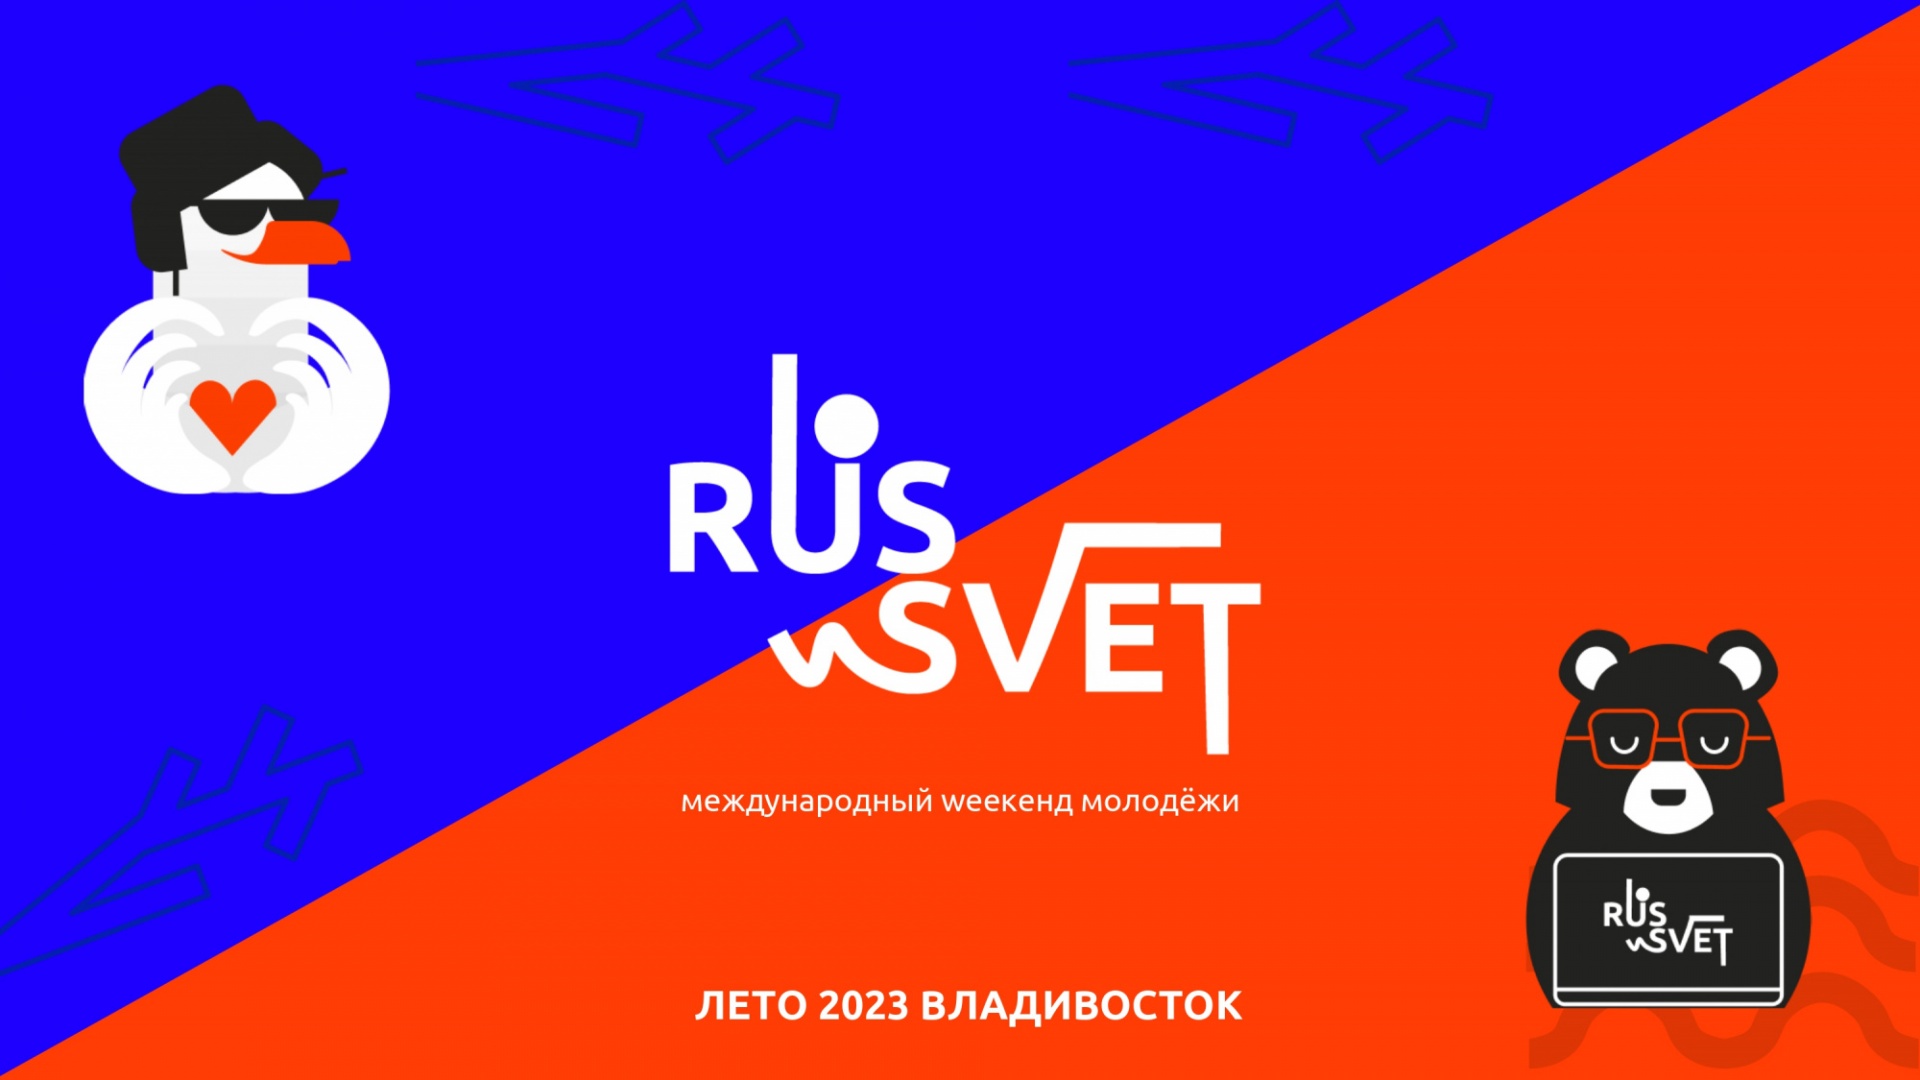  3  6  2023       weekend  RUS_SVET